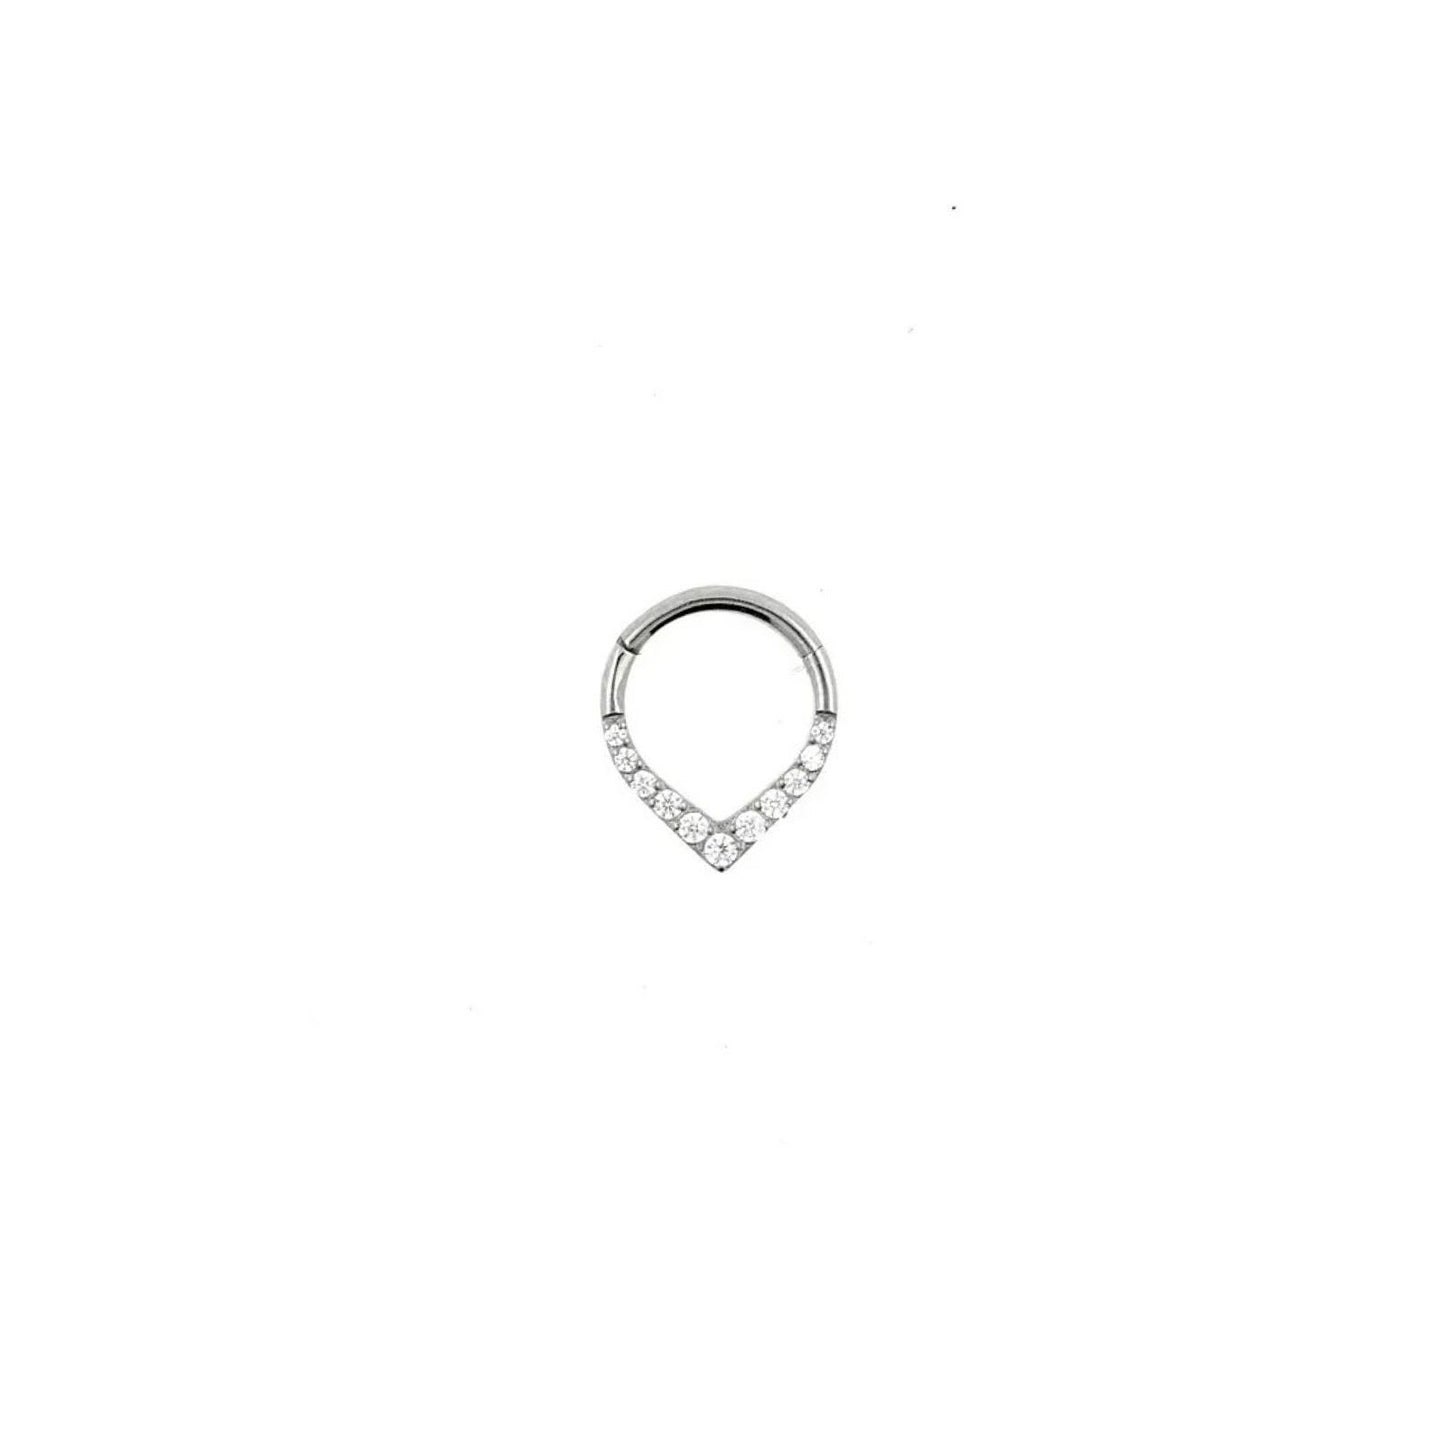 Argolla titanio ASTM F136 - Segment ring con línea de zirconias frontal en punta